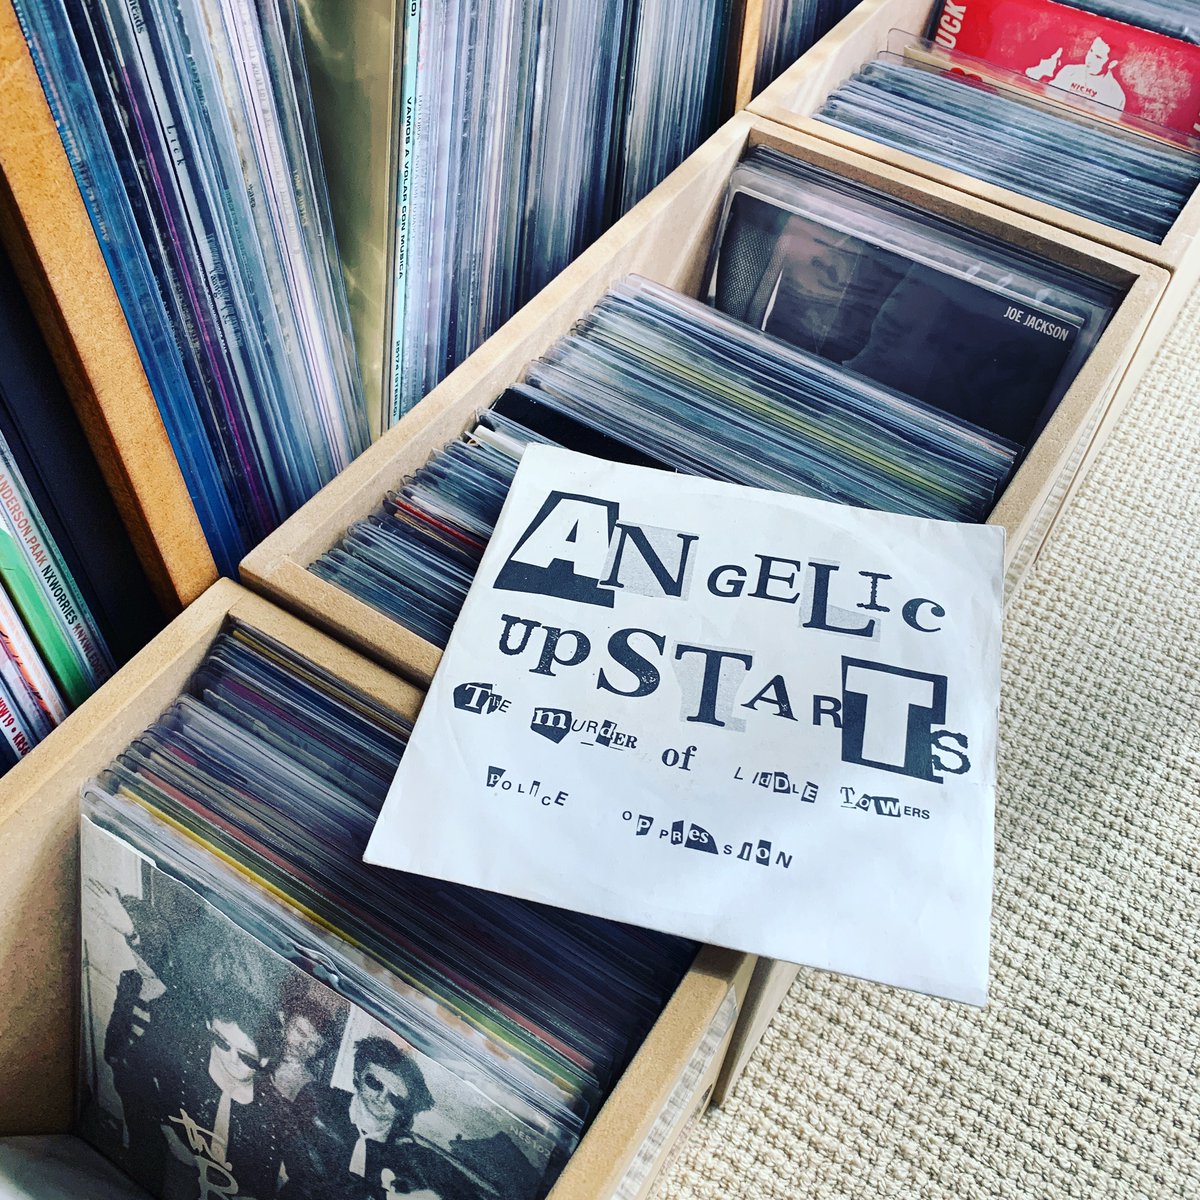 Who killed Liddle… #vinylcommunity #45rpm #punkvinyl #angelicupstarts